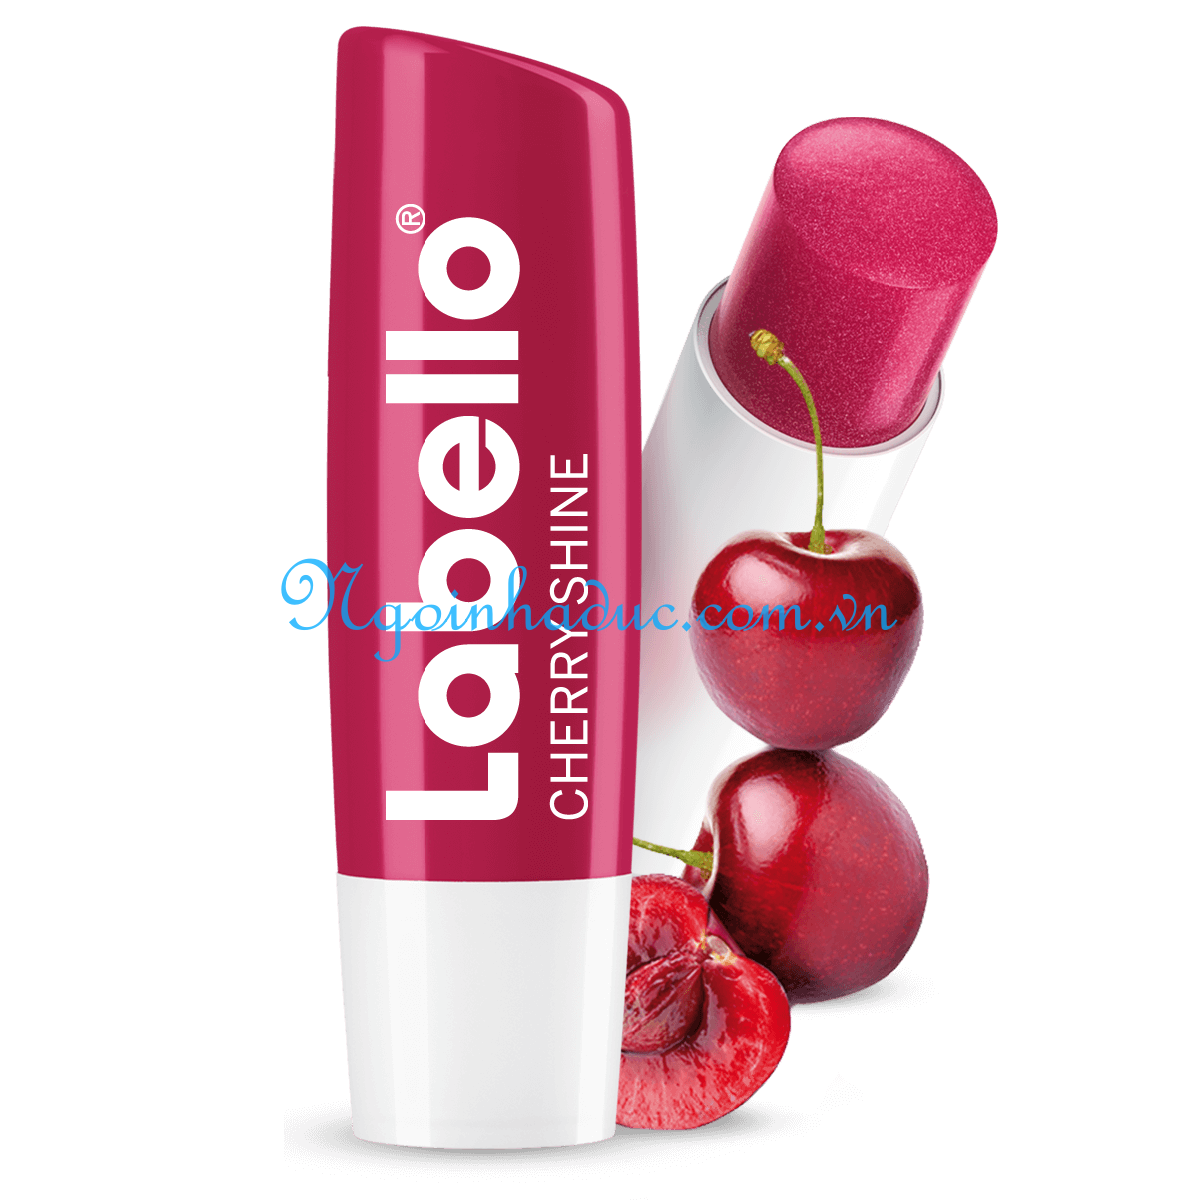 Son dưỡng môi Labello Cherry (Màu đỏ anh đào)